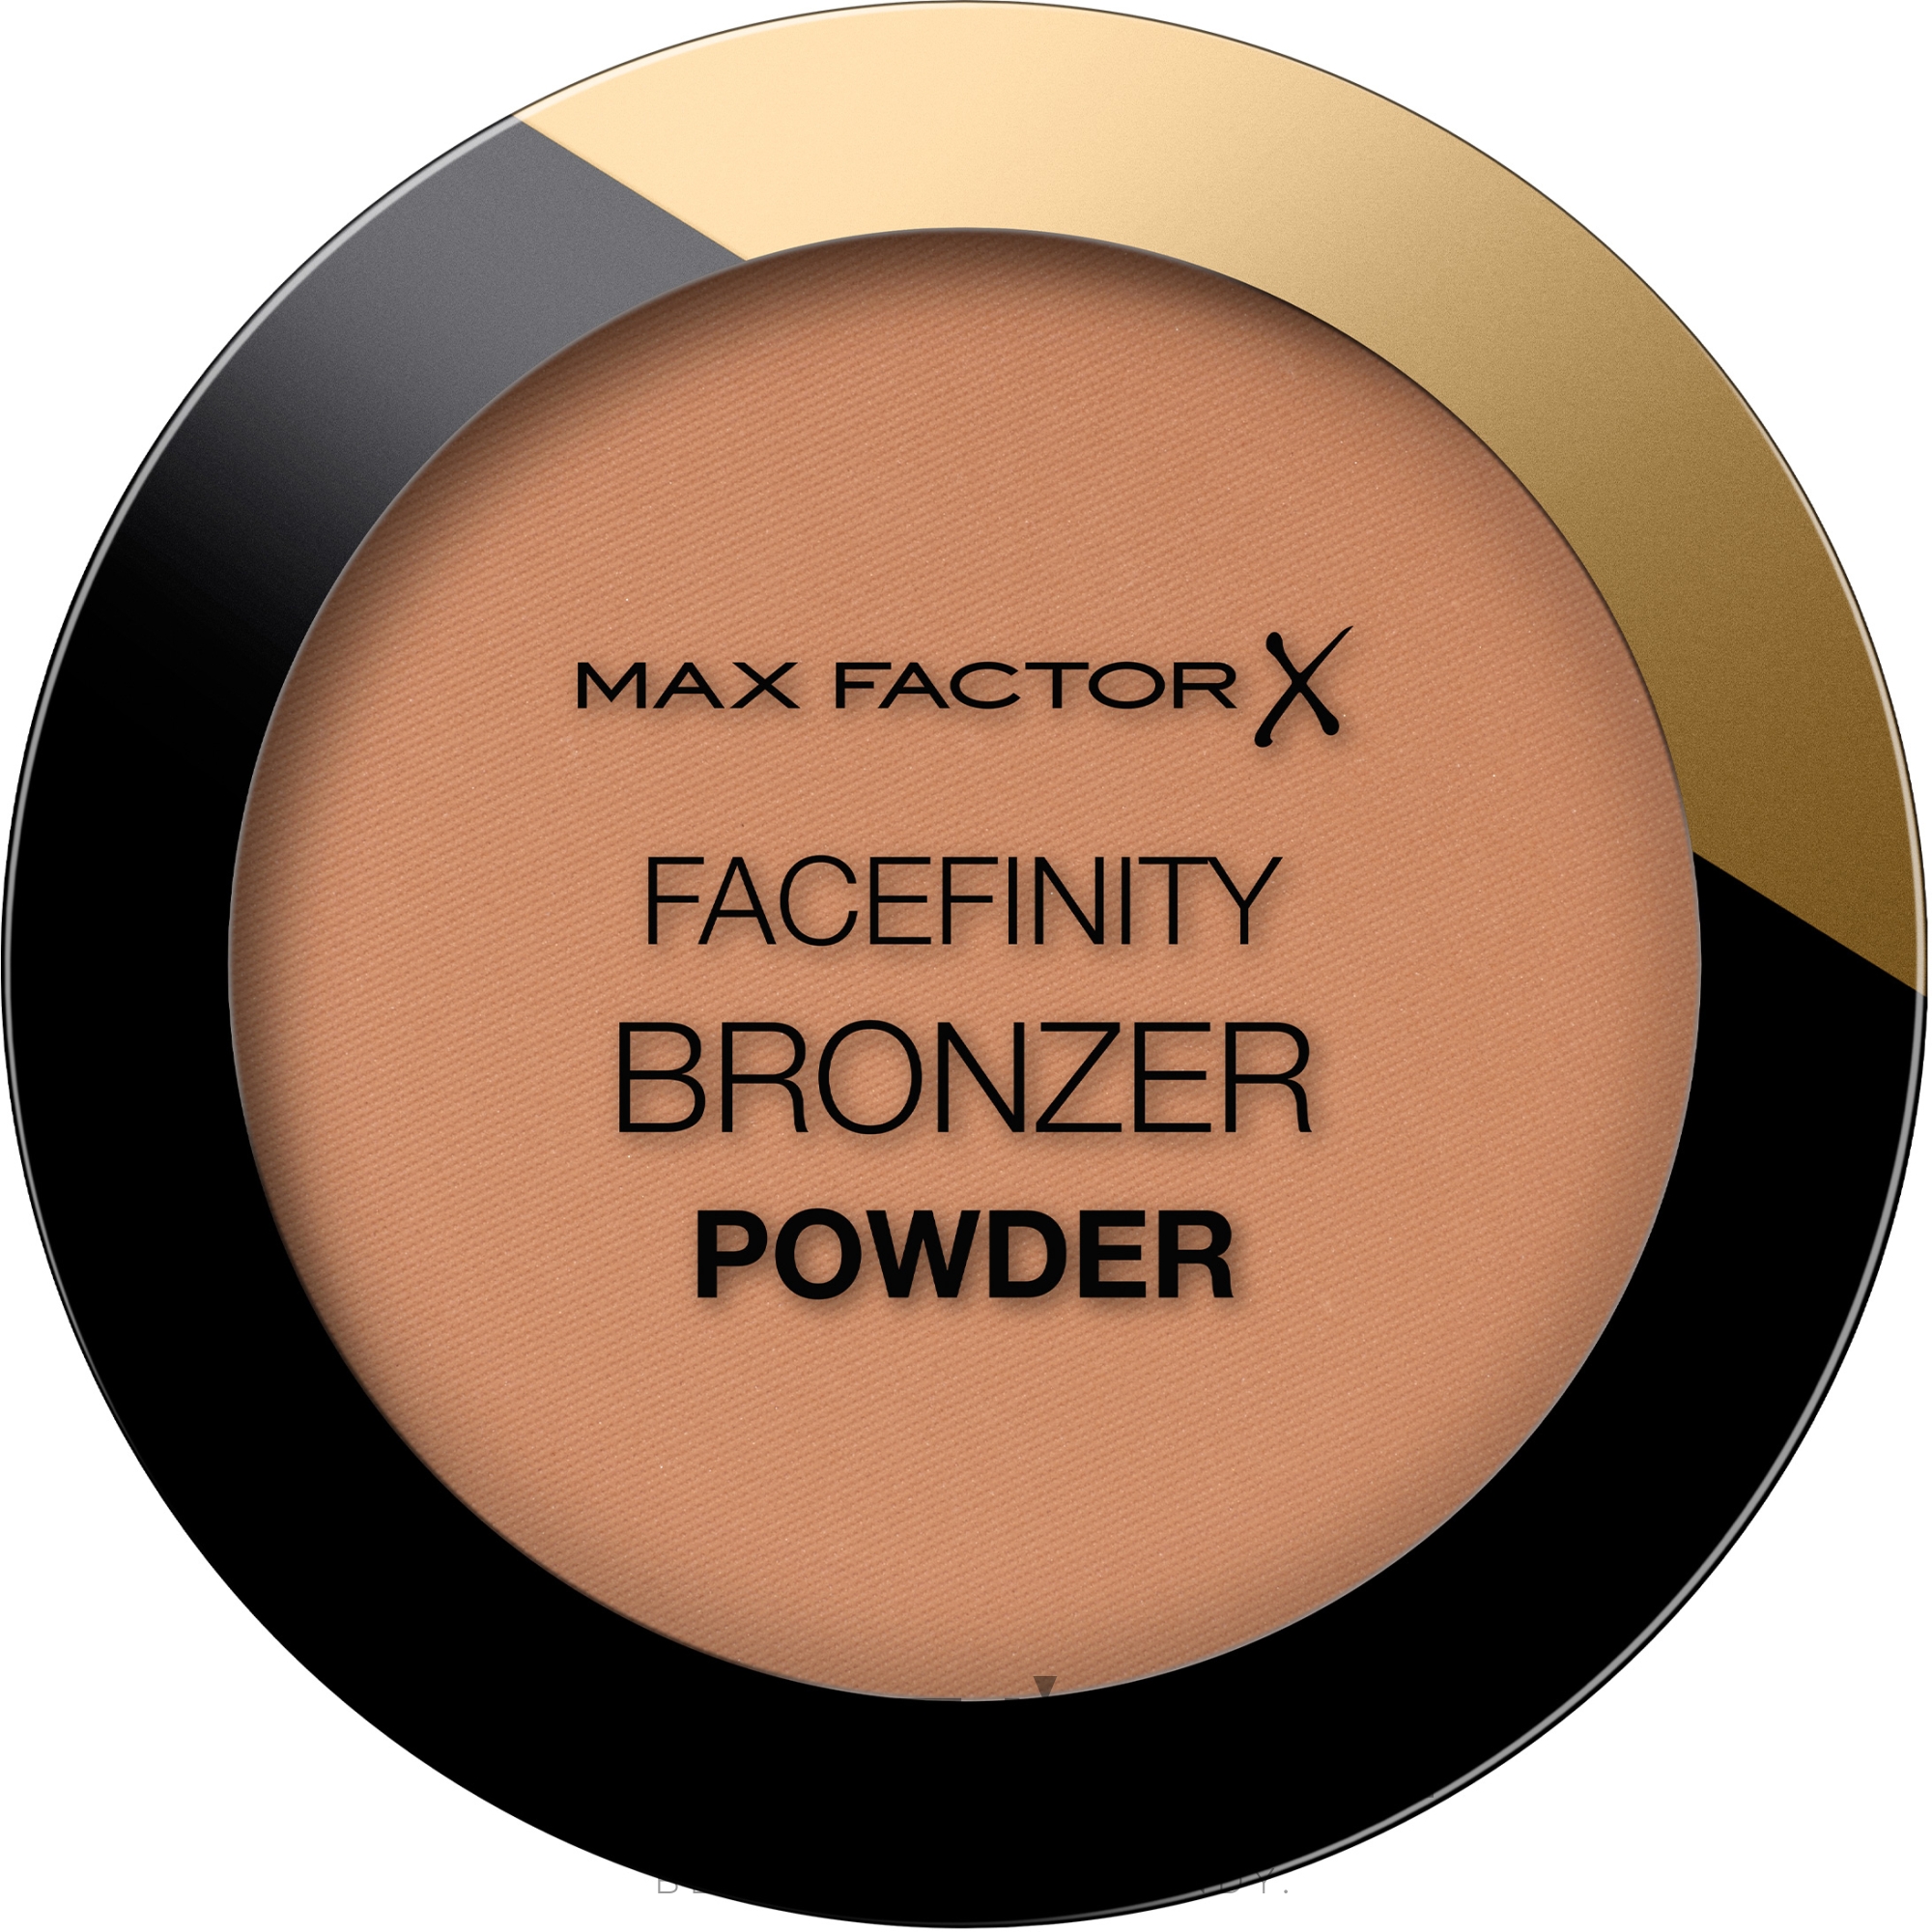 Puder brązujący do twarzy - Max Factor Facefinity Bronzer Powder — Zdjęcie 01 - Light Bronze